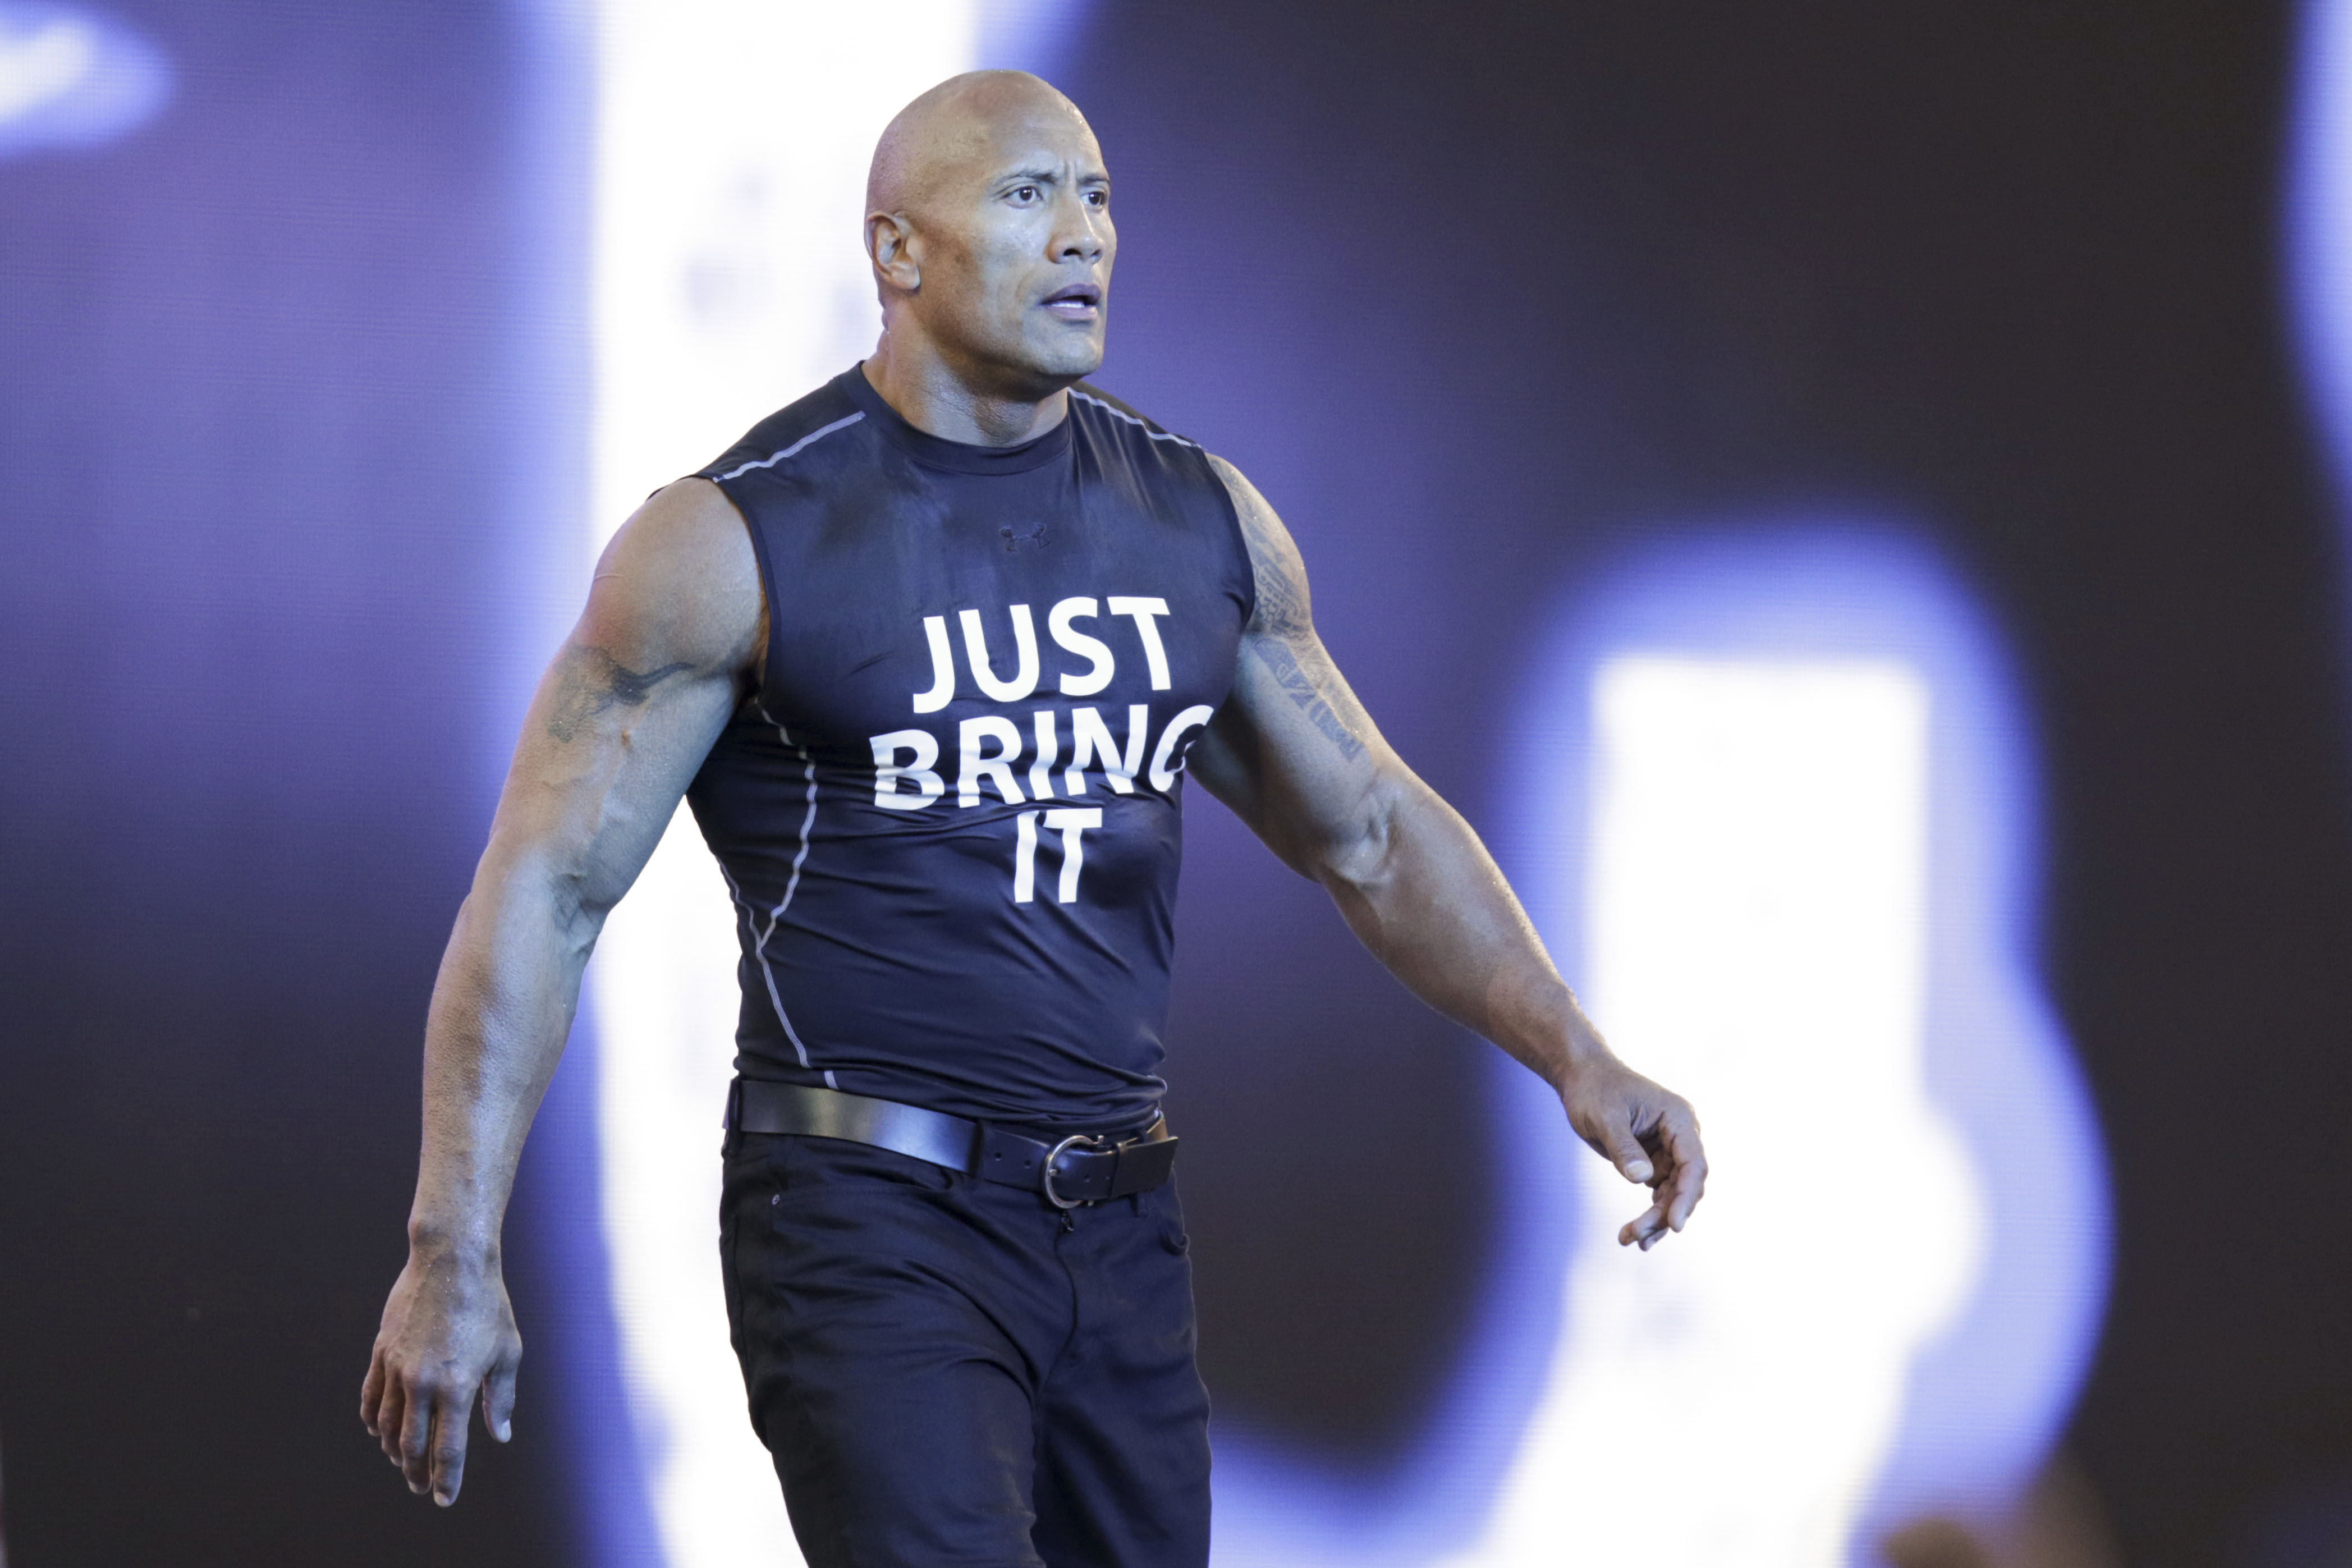 Die Sprache von The Rock führte dazu, dass WWE WrestleMania 40 für einige Momente stummschaltete